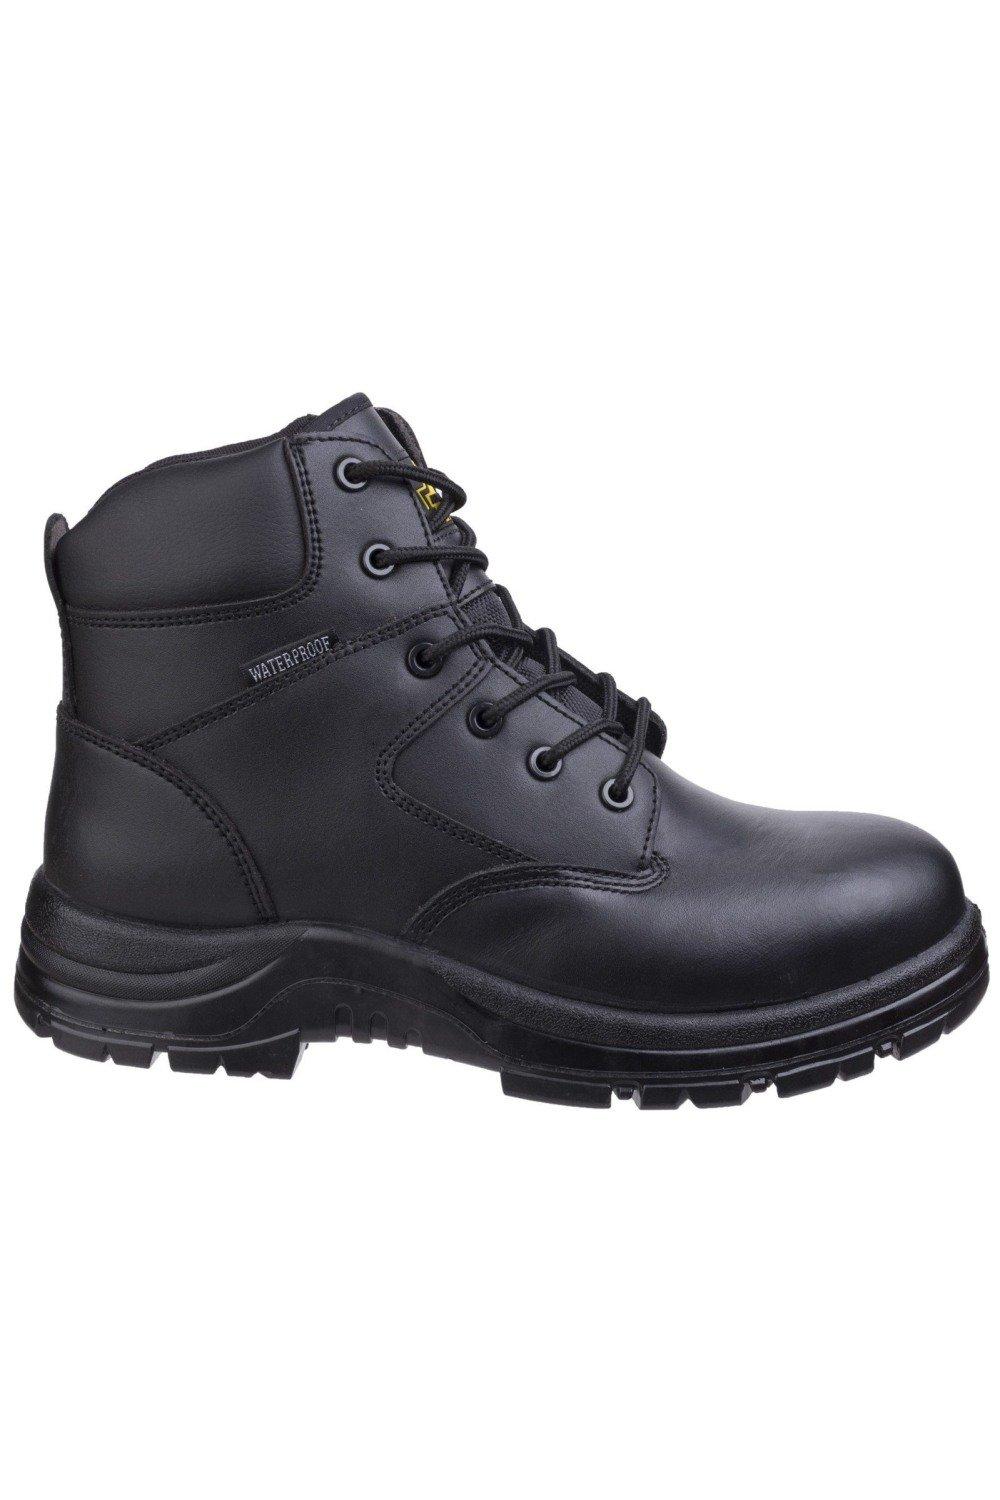 Защитные ботинки FS006C Amblers, черный